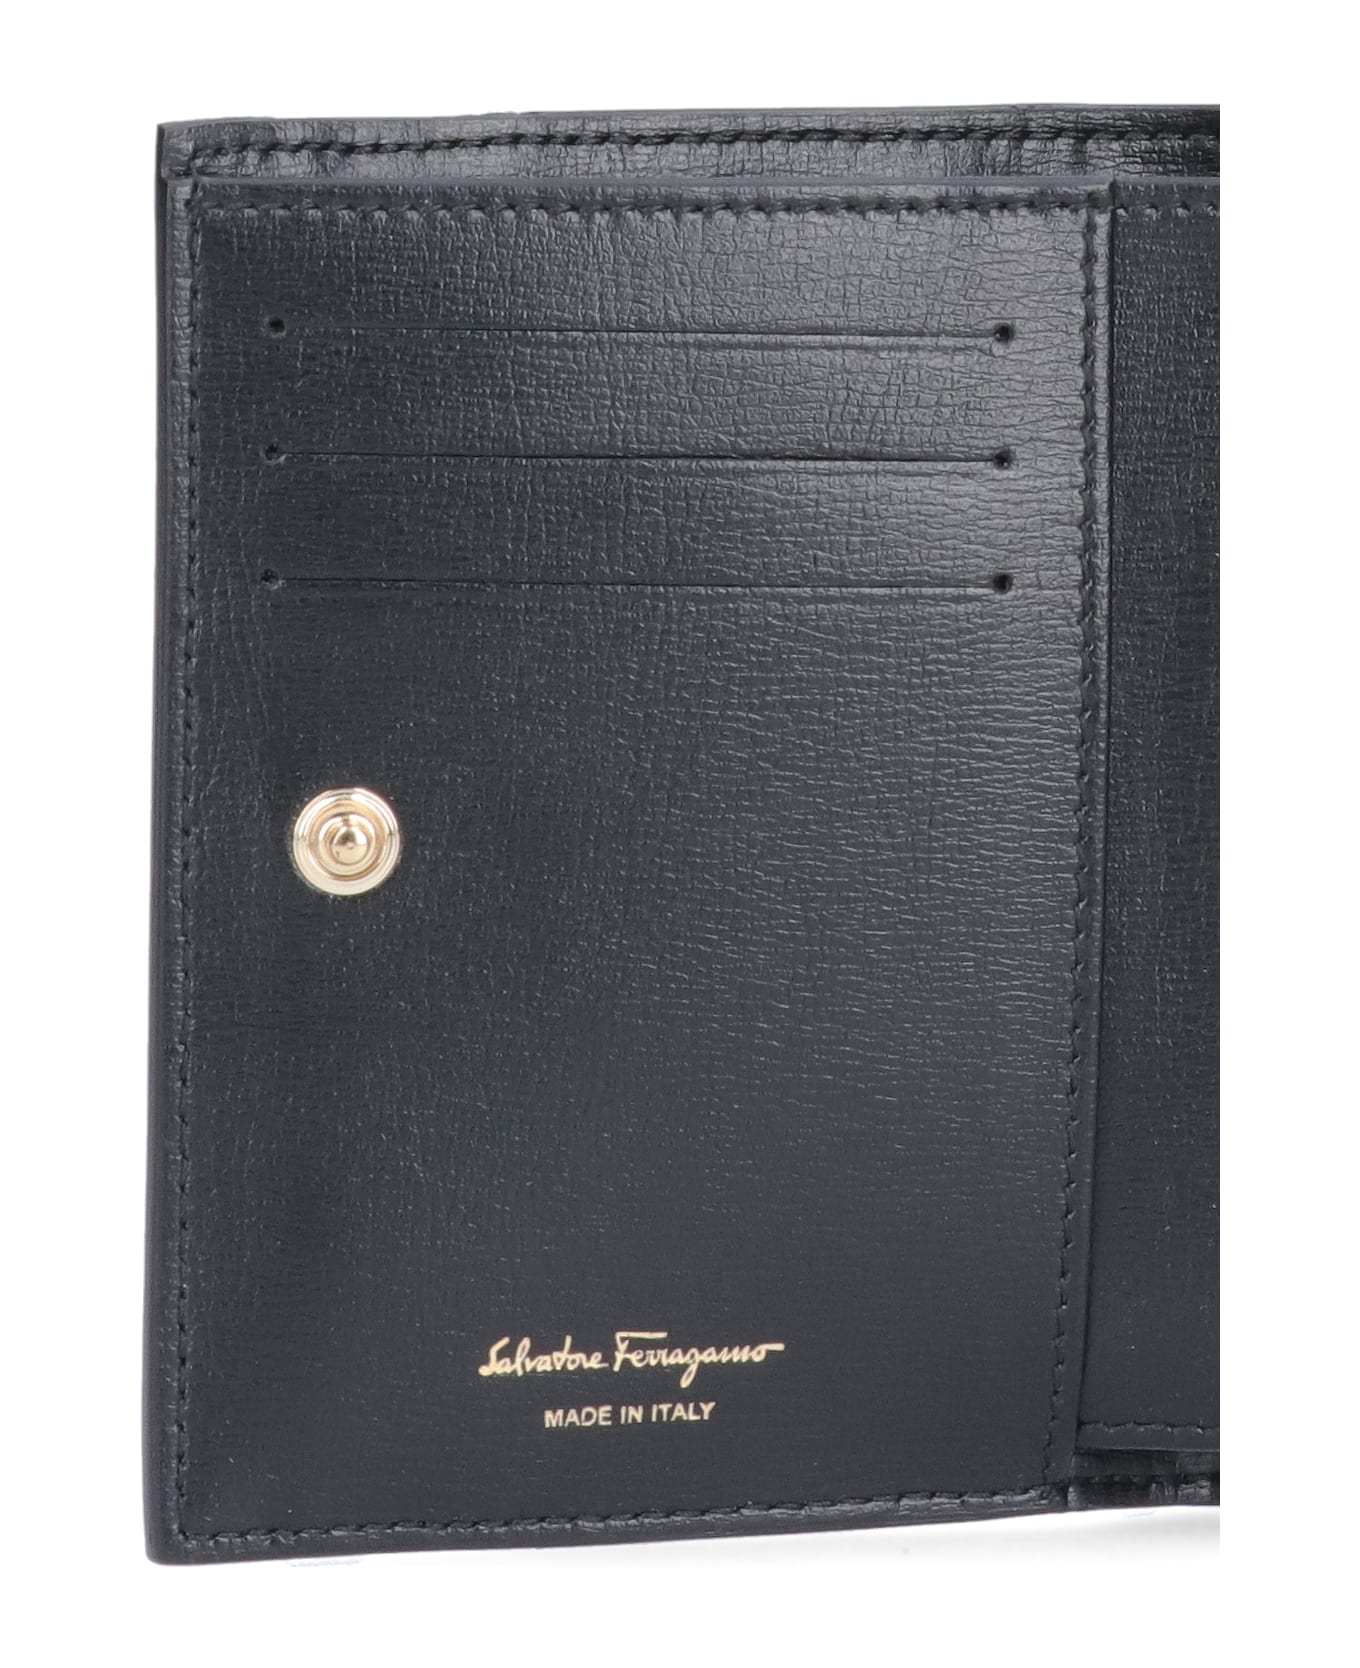 Ferragamo 'vara' Compact Wallet - NERO 財布